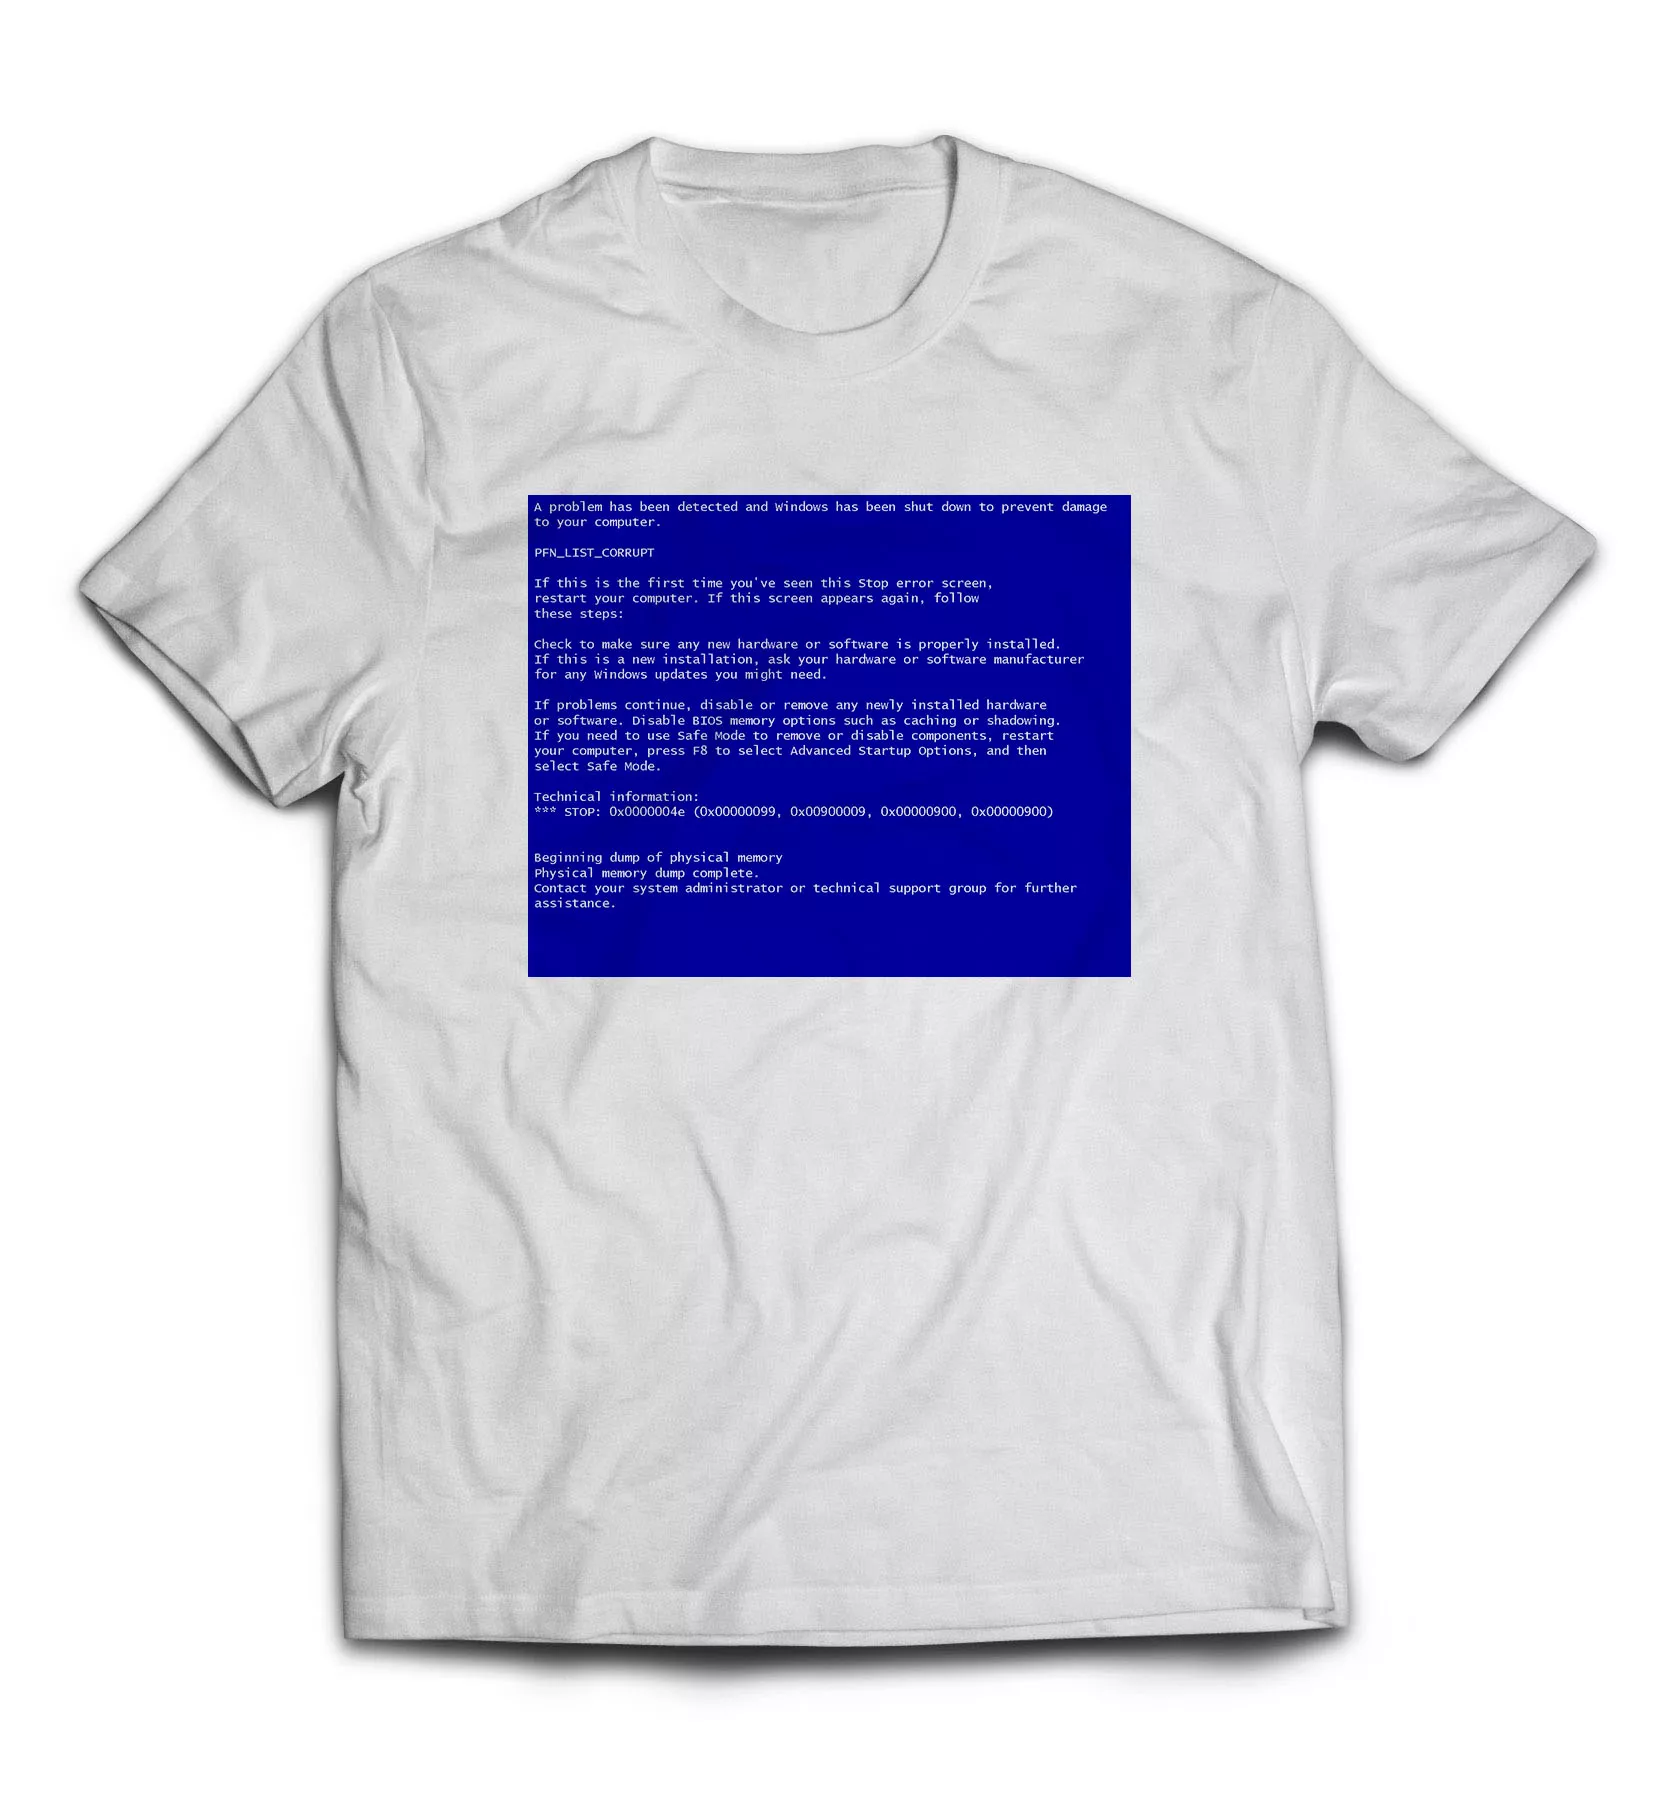 Белая футболка - BSOD (Синий экран смерти)